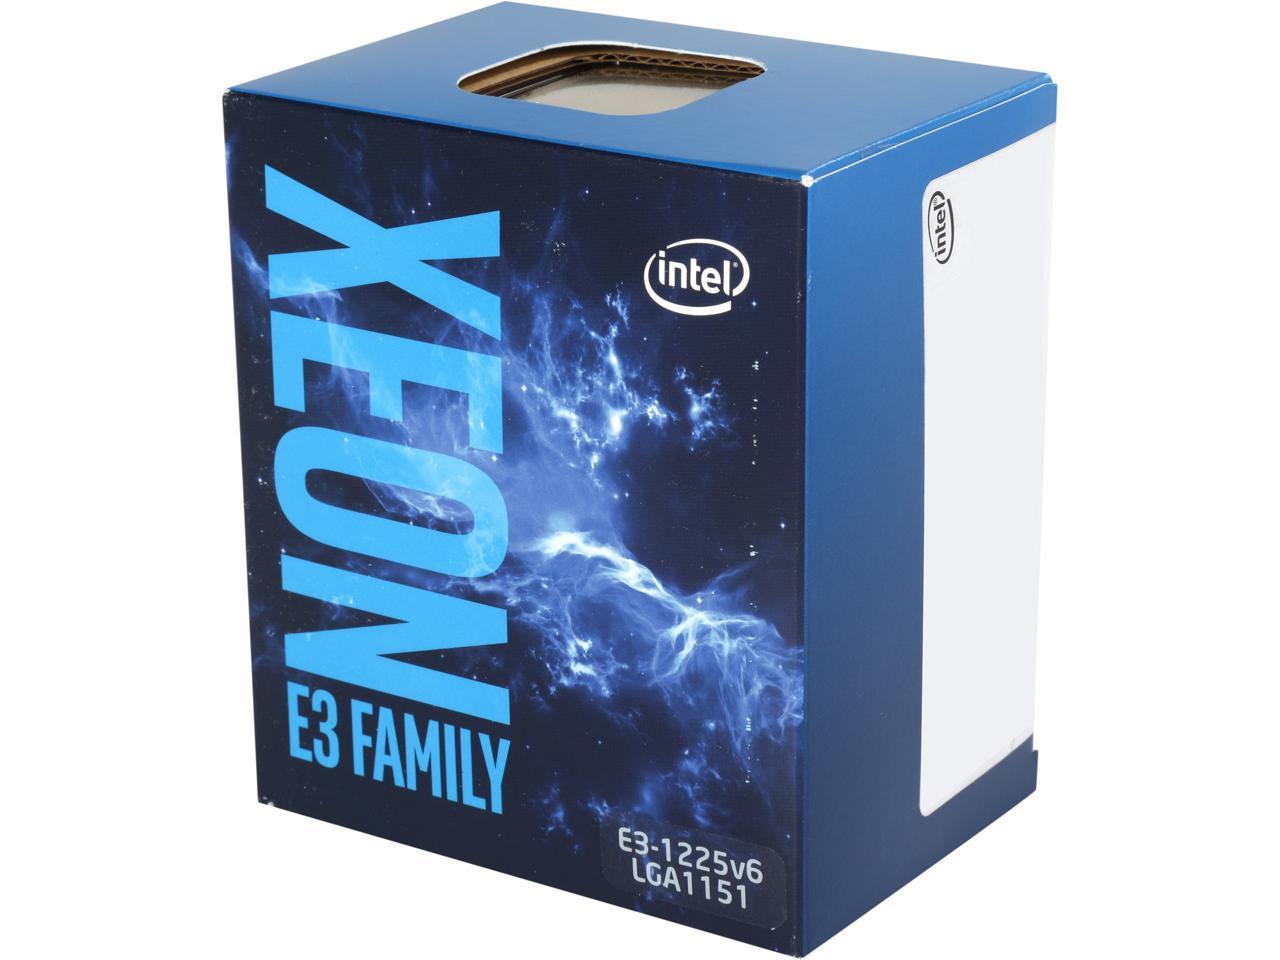 Intel Xeon E3-1225 V6 Kaby Lake 3.3 GHz (3.7 GHz Turbo) LGA 1151 73W BX80677E31225V6 Server Processor Intel® HD Graphics P630